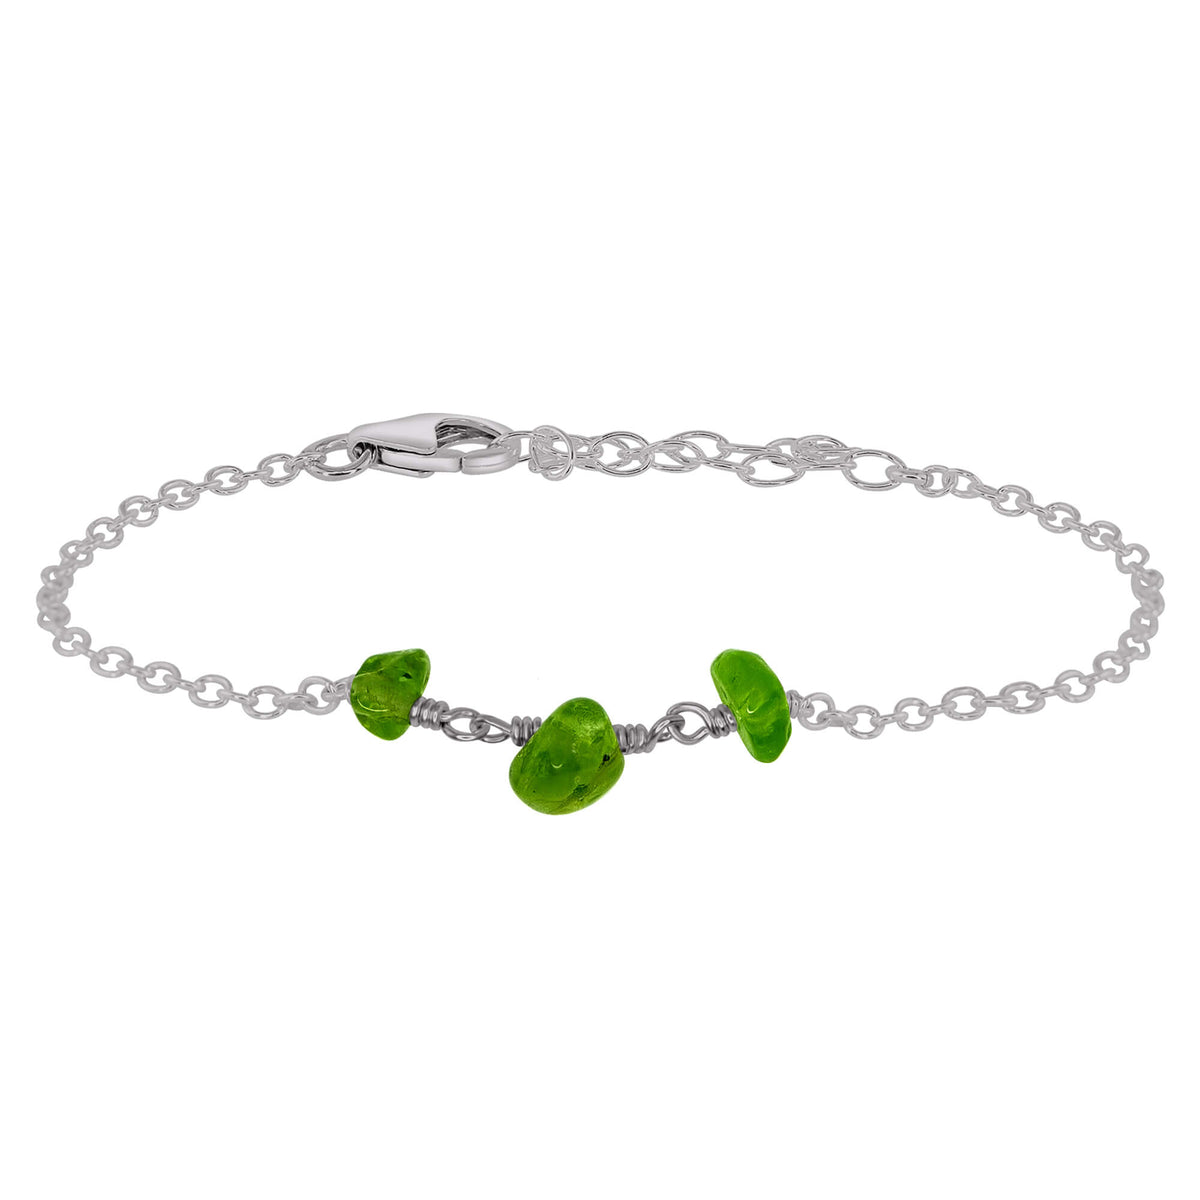 Beaded Chain Bracelet - Peridot - Stainless Steel - Luna Tide Handmade Jewellery